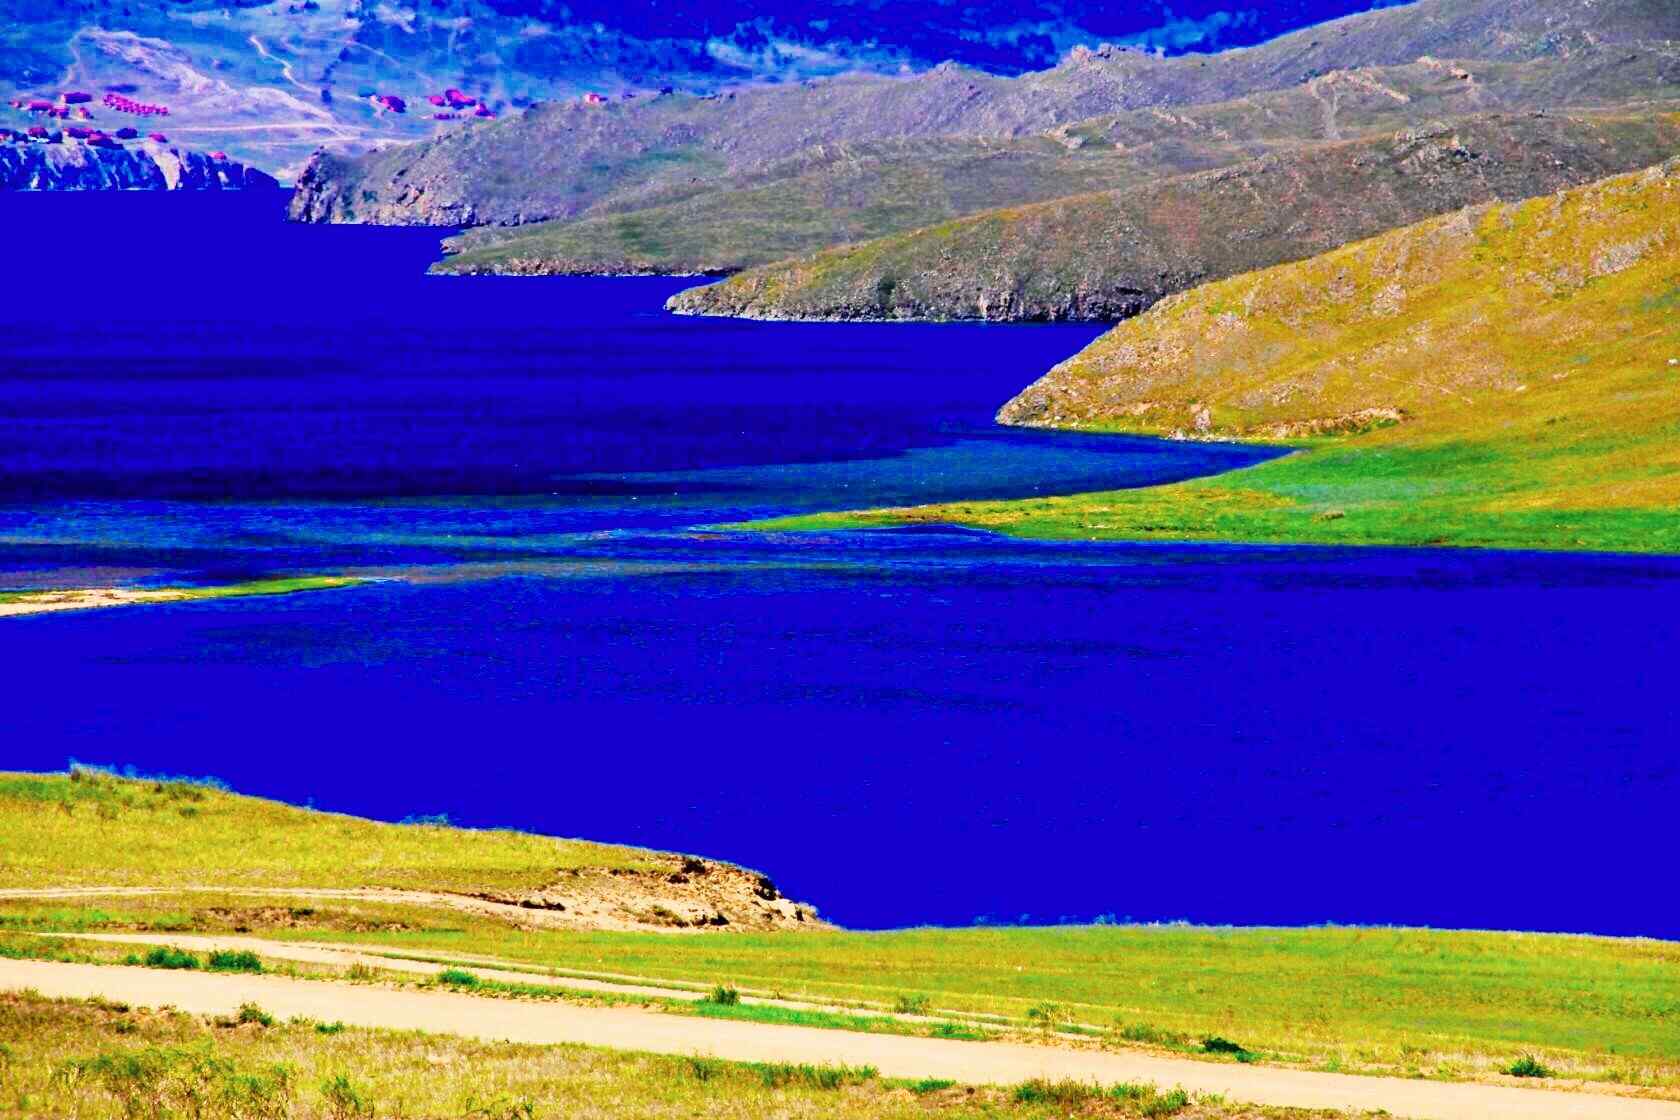 贝加尔湖畔优美风景图片护眼壁纸